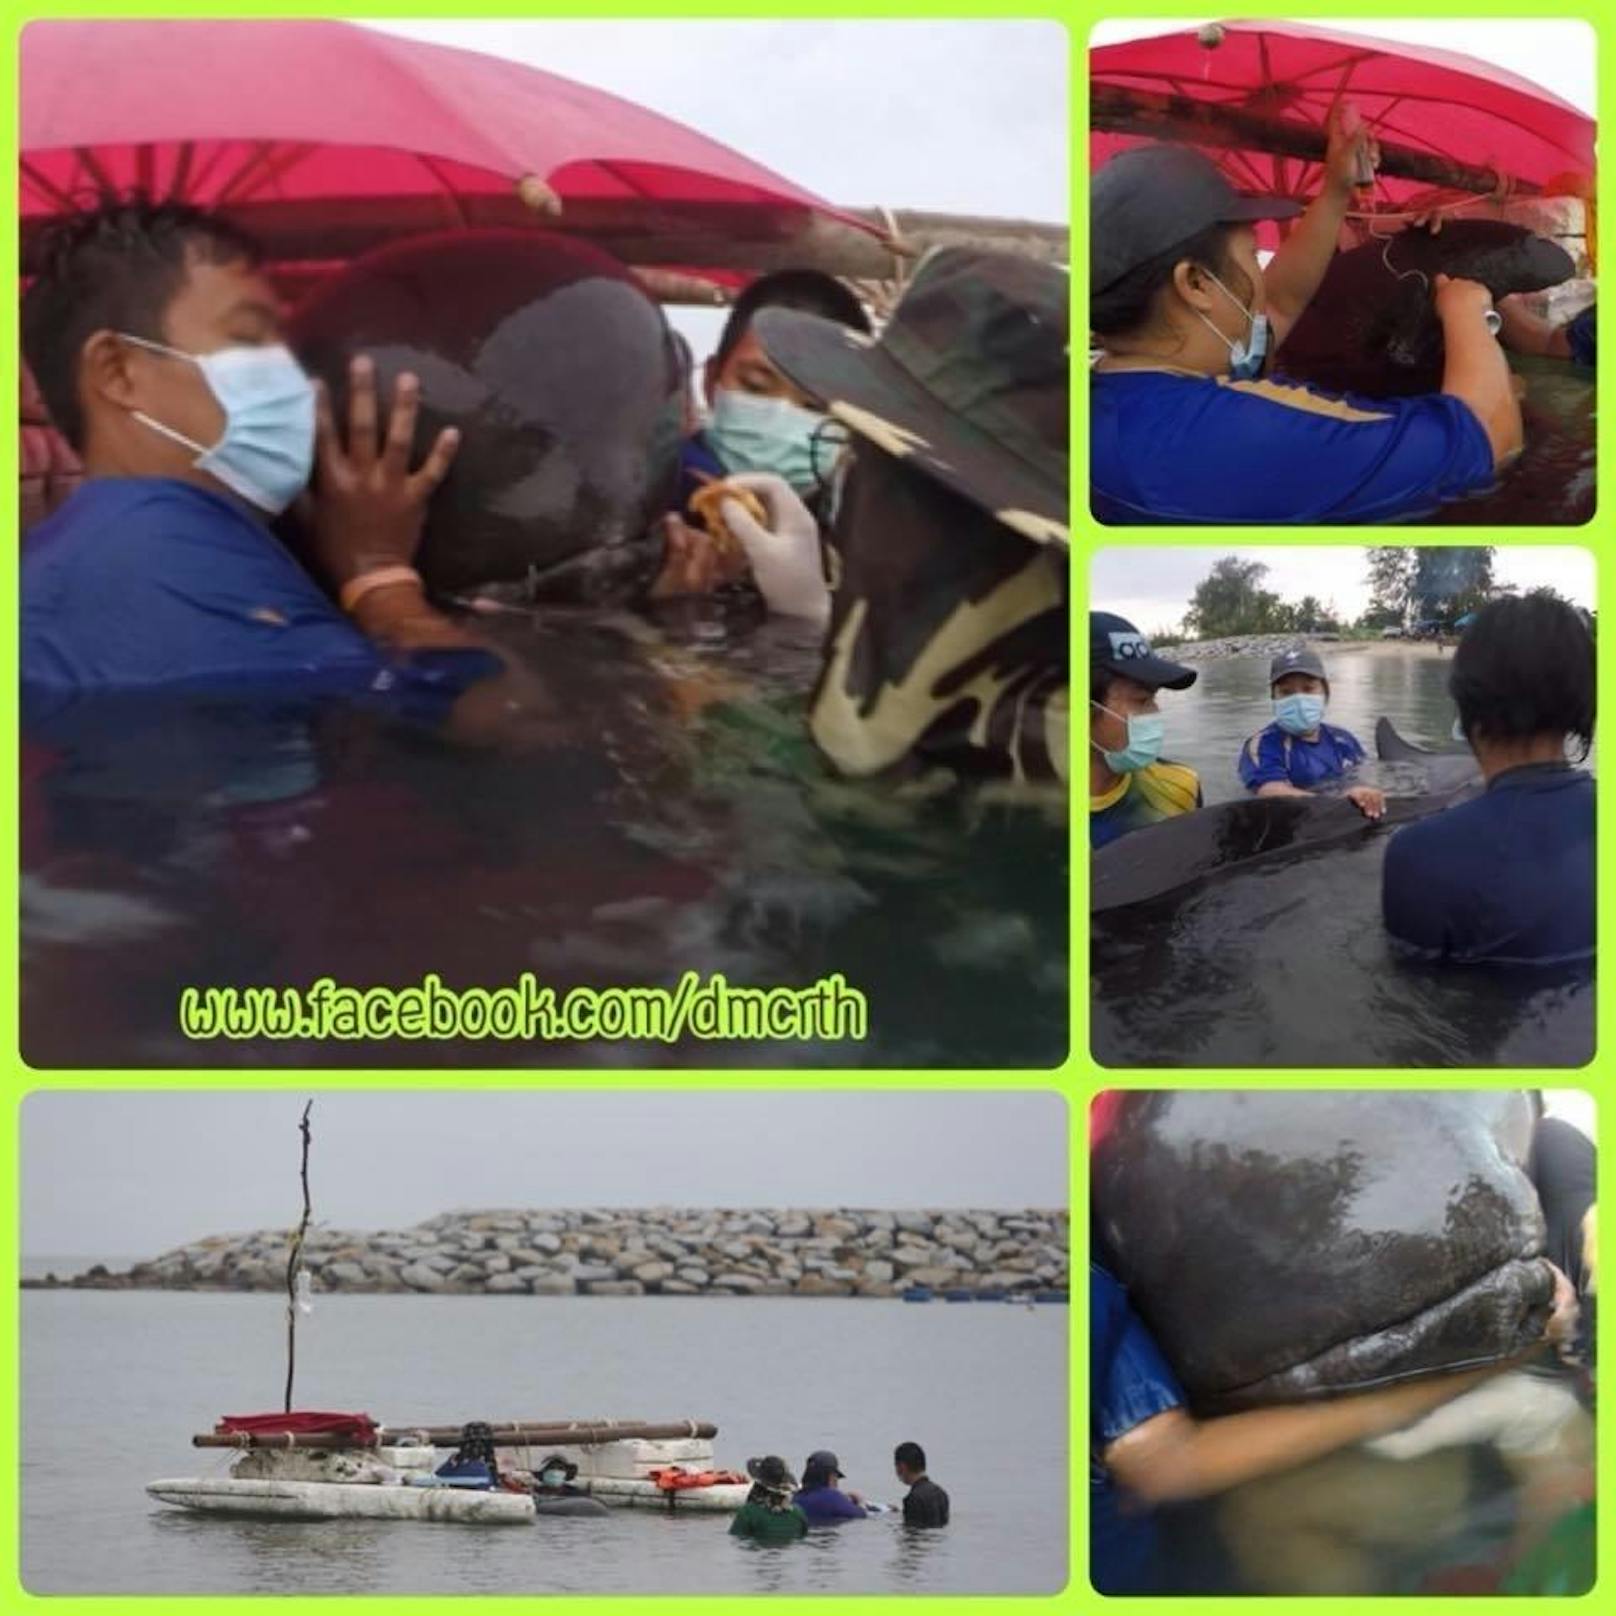 Der halbtote Pilotwal war in einem Kanal an der Grenze zu Malaysia gefunden worden.